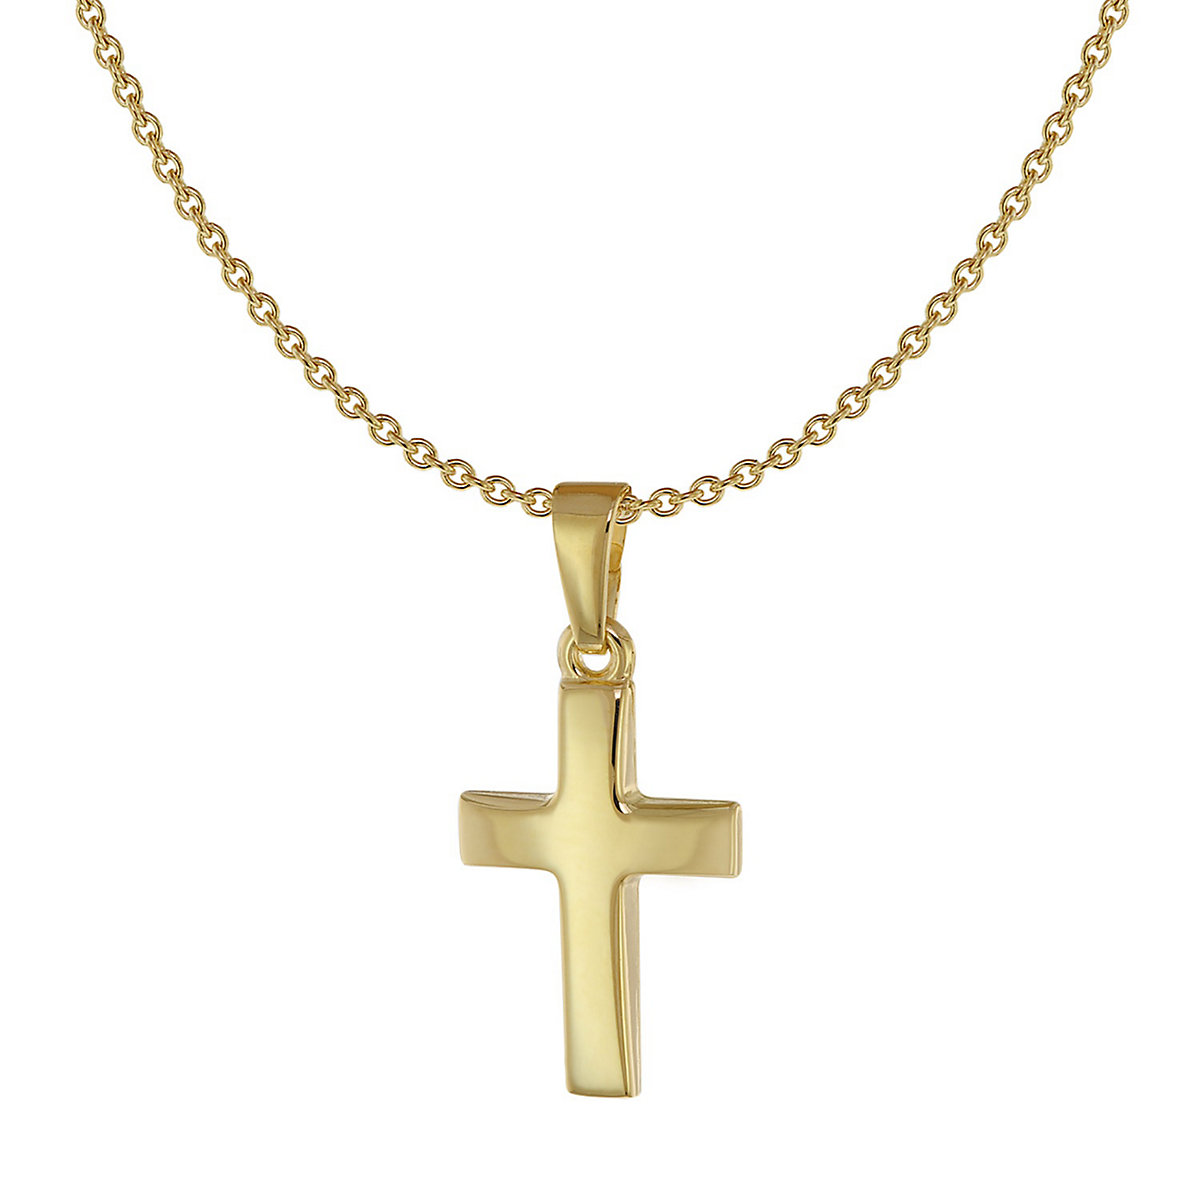 ACALEE Kinder-Halskette mit Kreuz-Anhänger Gold 333 / 8 Karat Halsketten gold